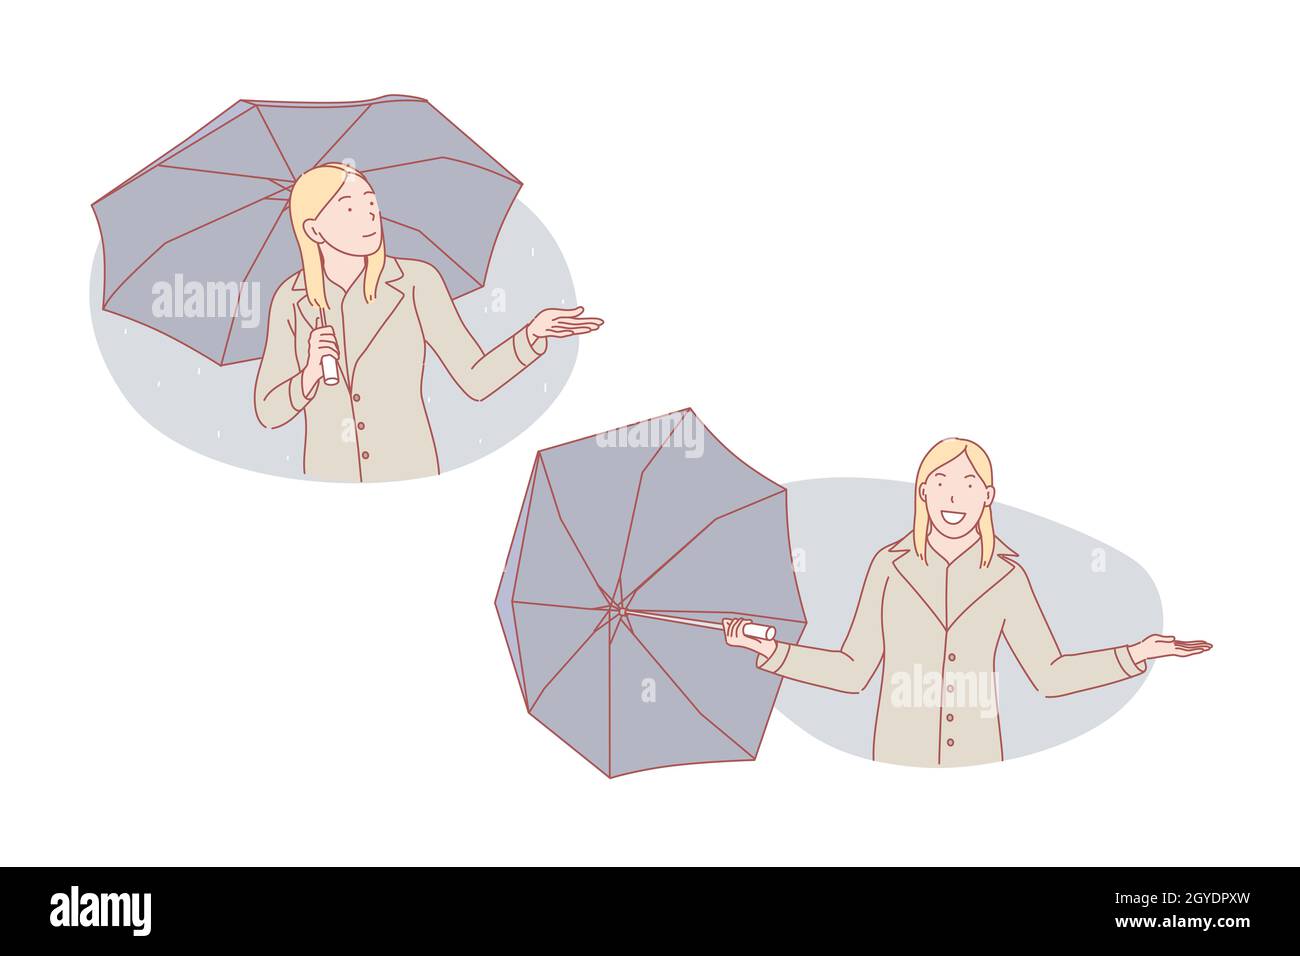 Gutes Wetter oder schlechtes Wetter, Regenschirm-Set-Konzept. Die junge Frau ist traurig über das schlechte Wetter, das unter dem Regenschirm auf Regen steht. Glückliches Mädchen ist über g aufgeregt Stockfoto